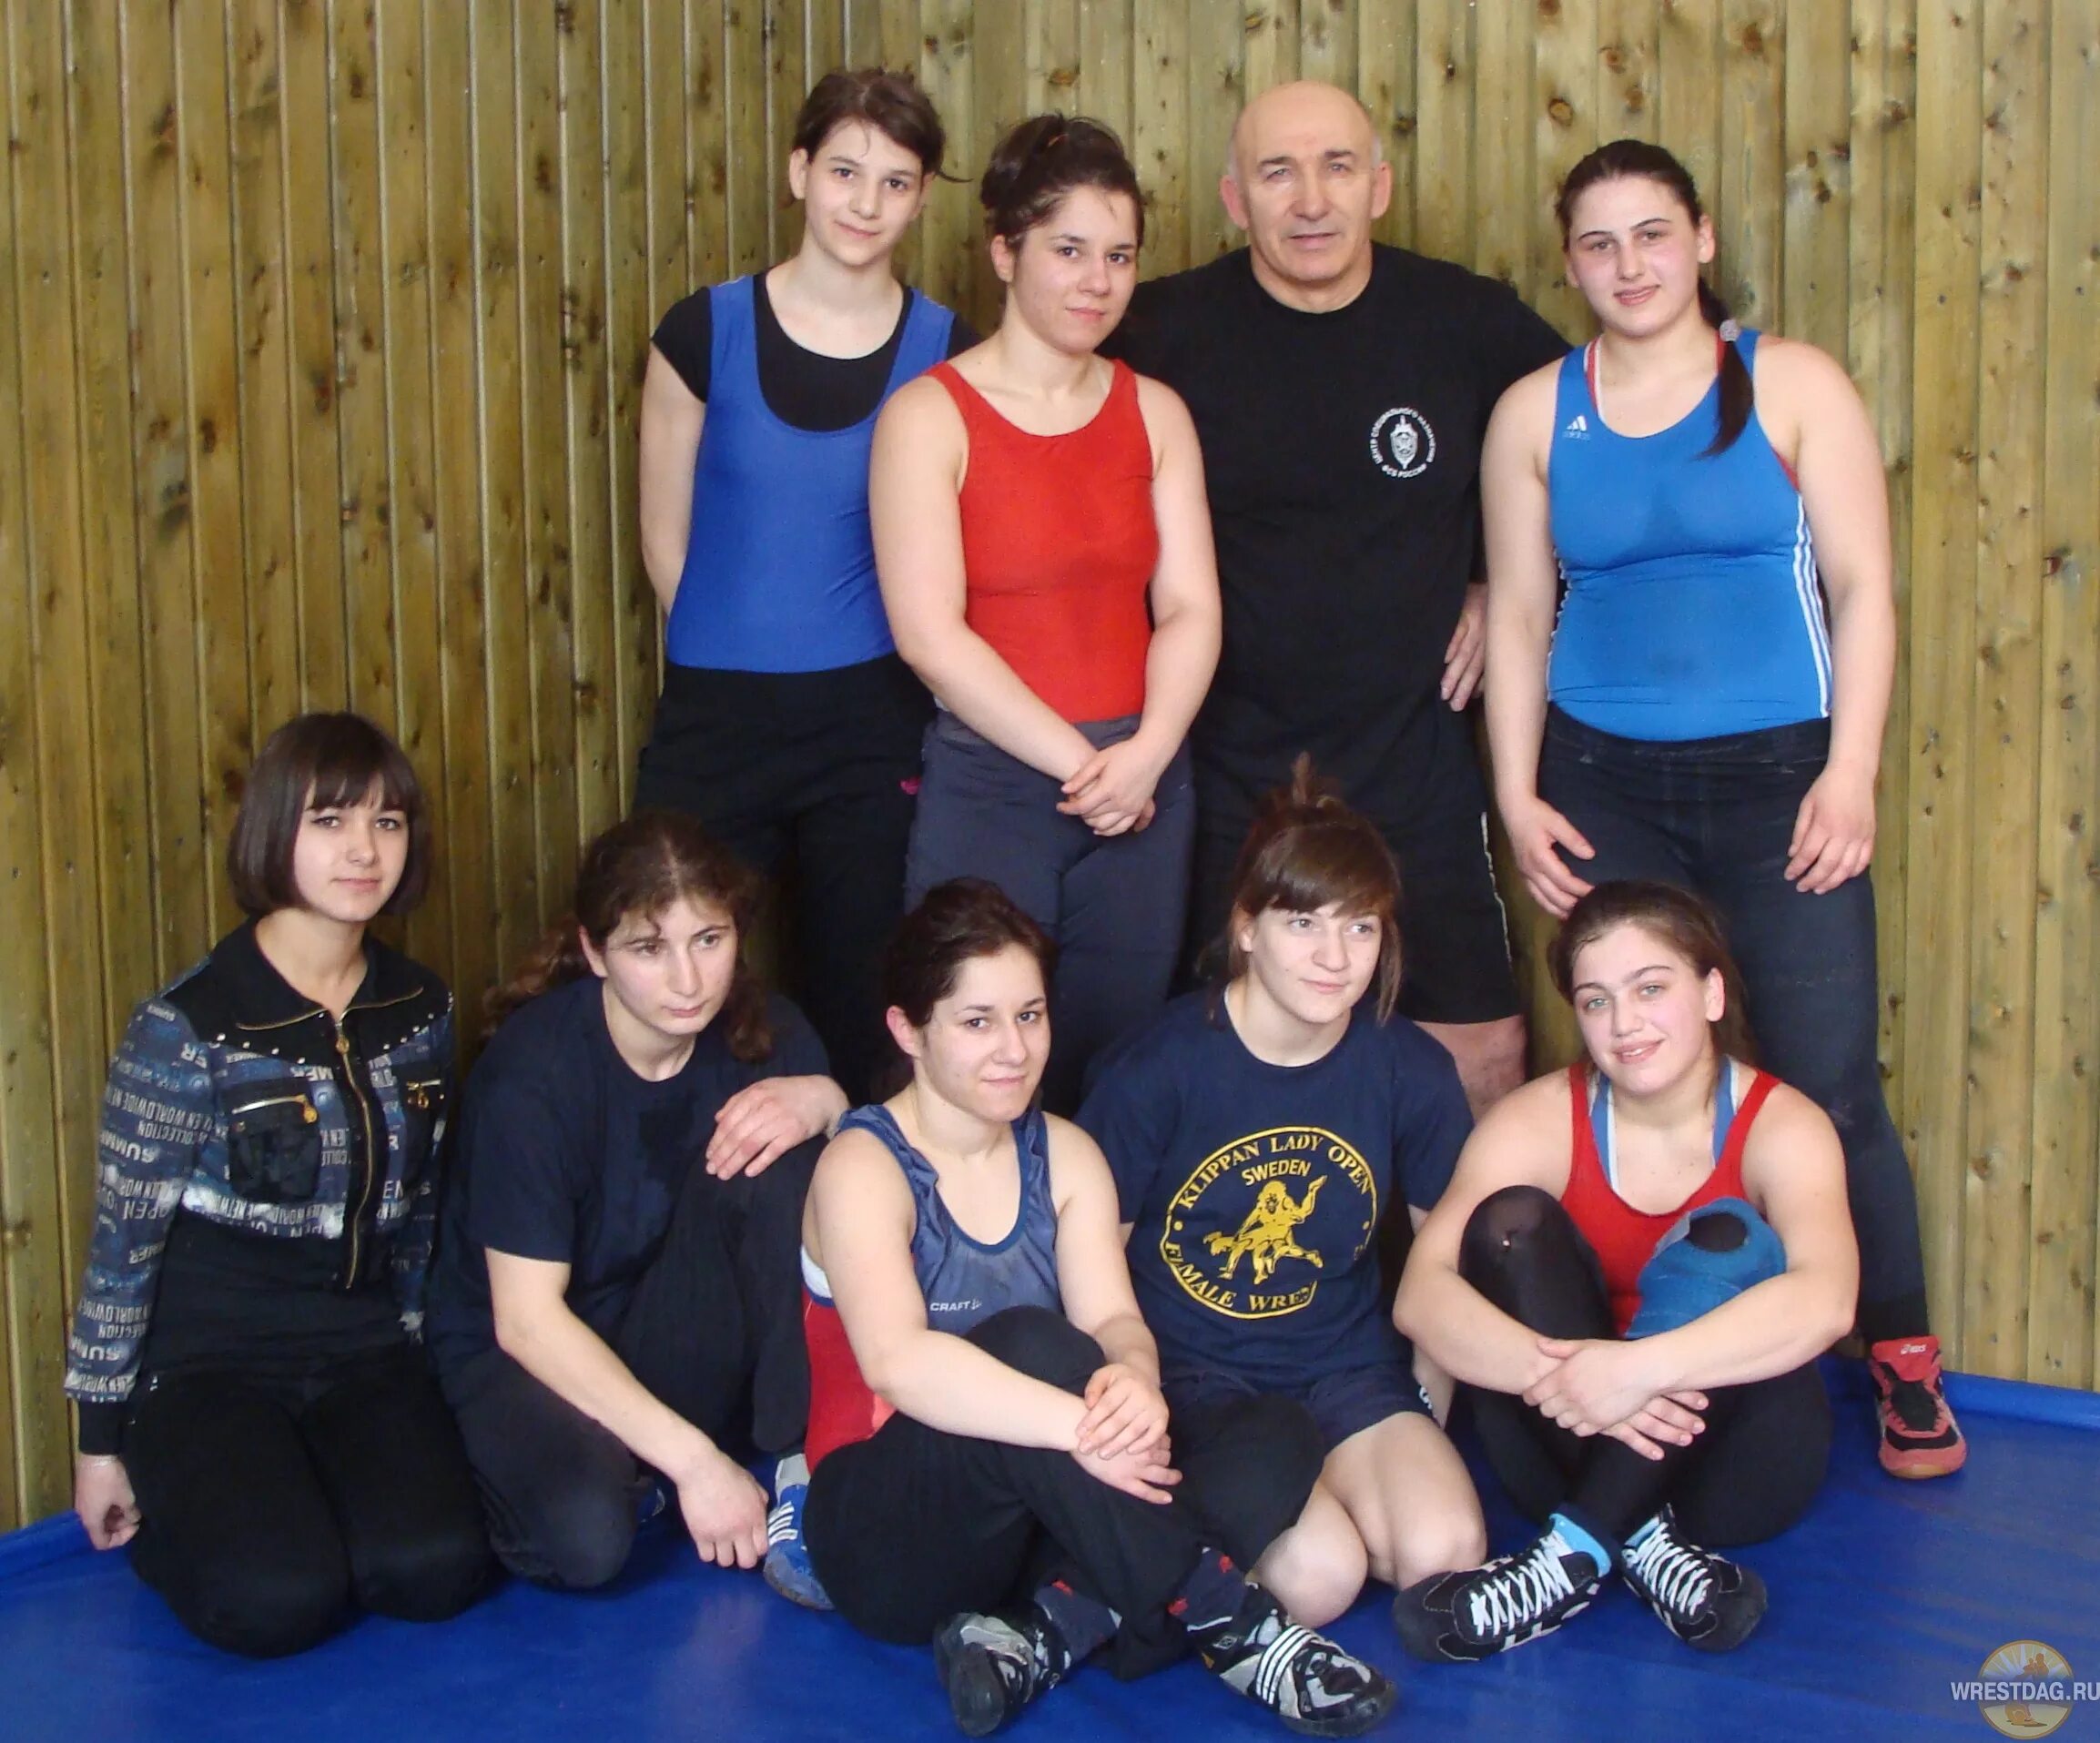 Женская сборная Дагестана по вольной борьбе. Женщины спортсменки Дагестана. Дагестанские борцы женщины.